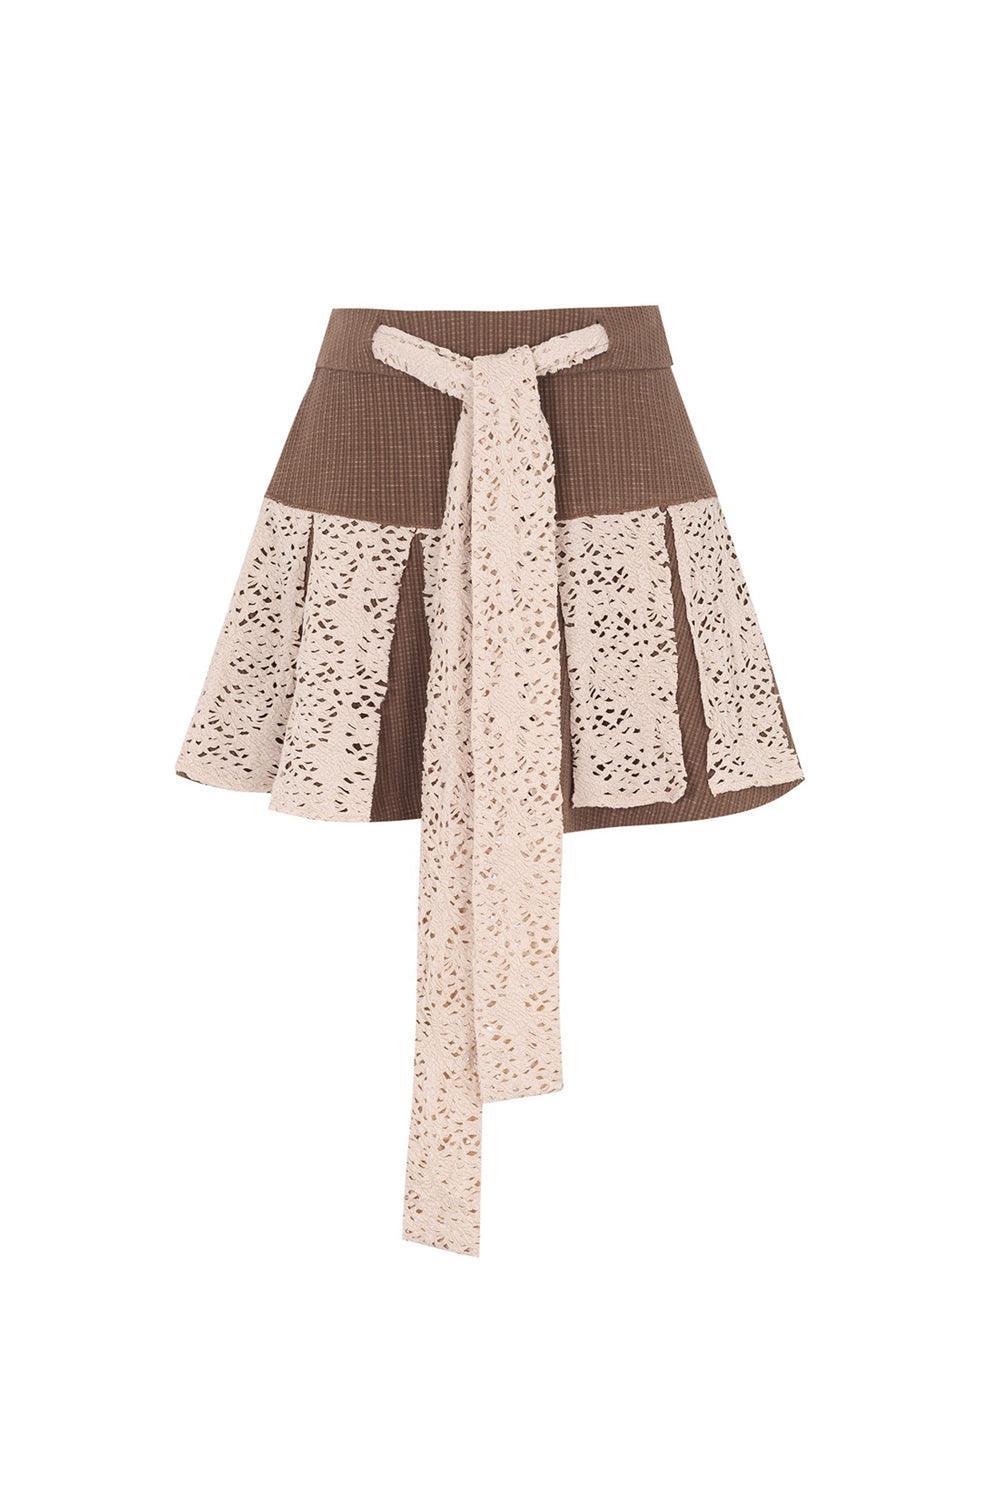 Short Textured A-line Skirt Brown - Pixie Rebels